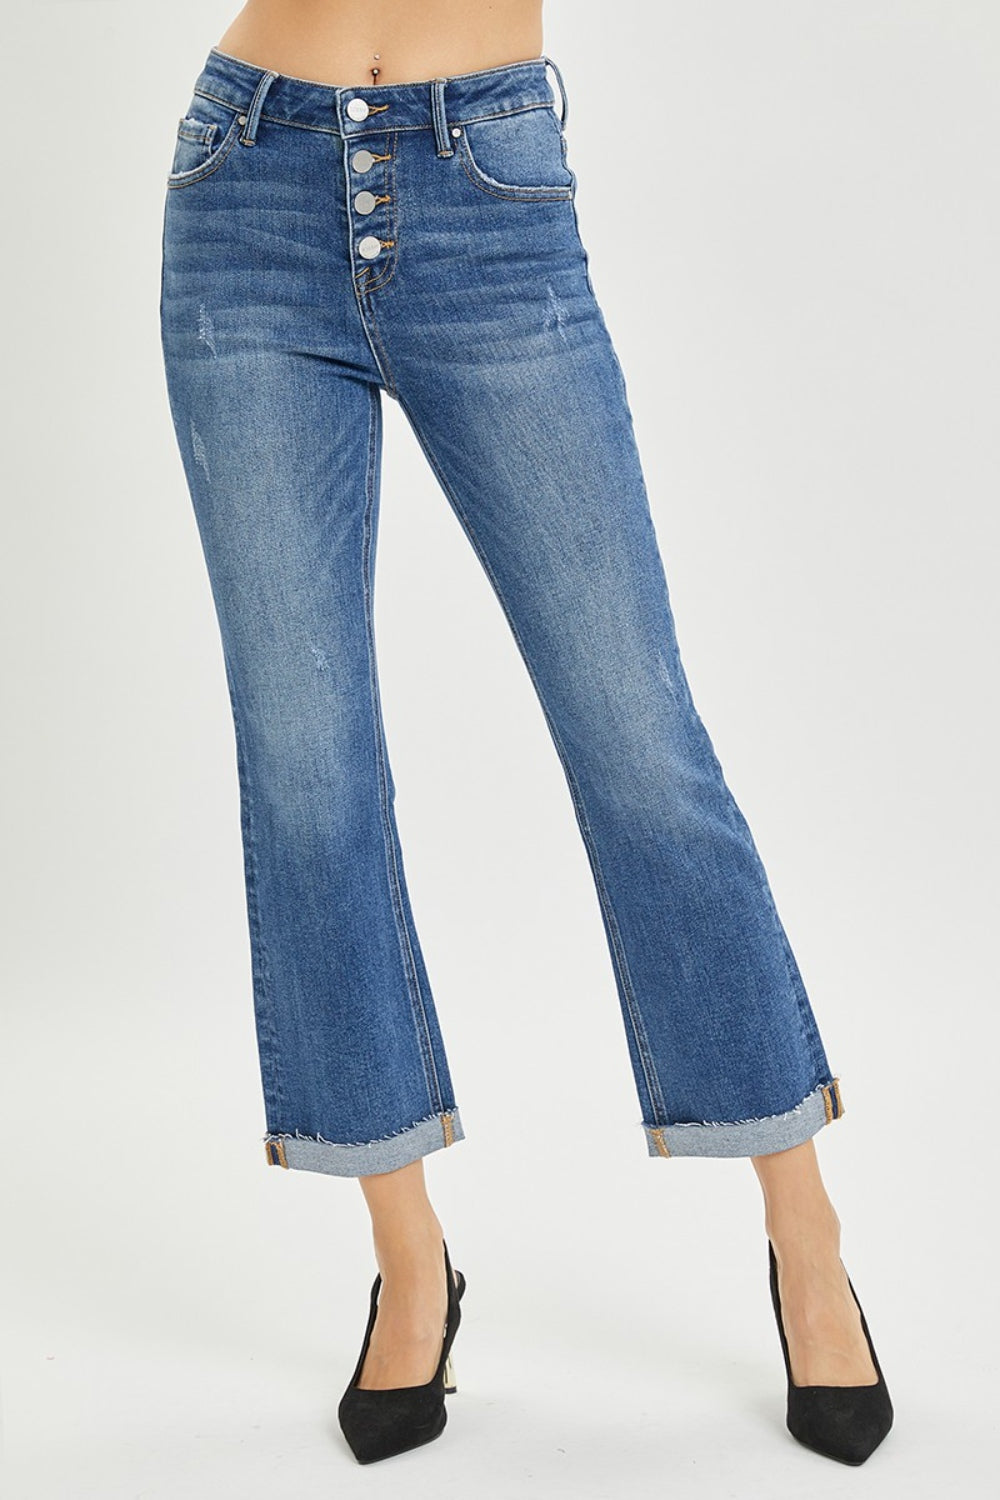 RISEN Straight Leg Jeans - Ankle Length - Inspired Eye Boutique